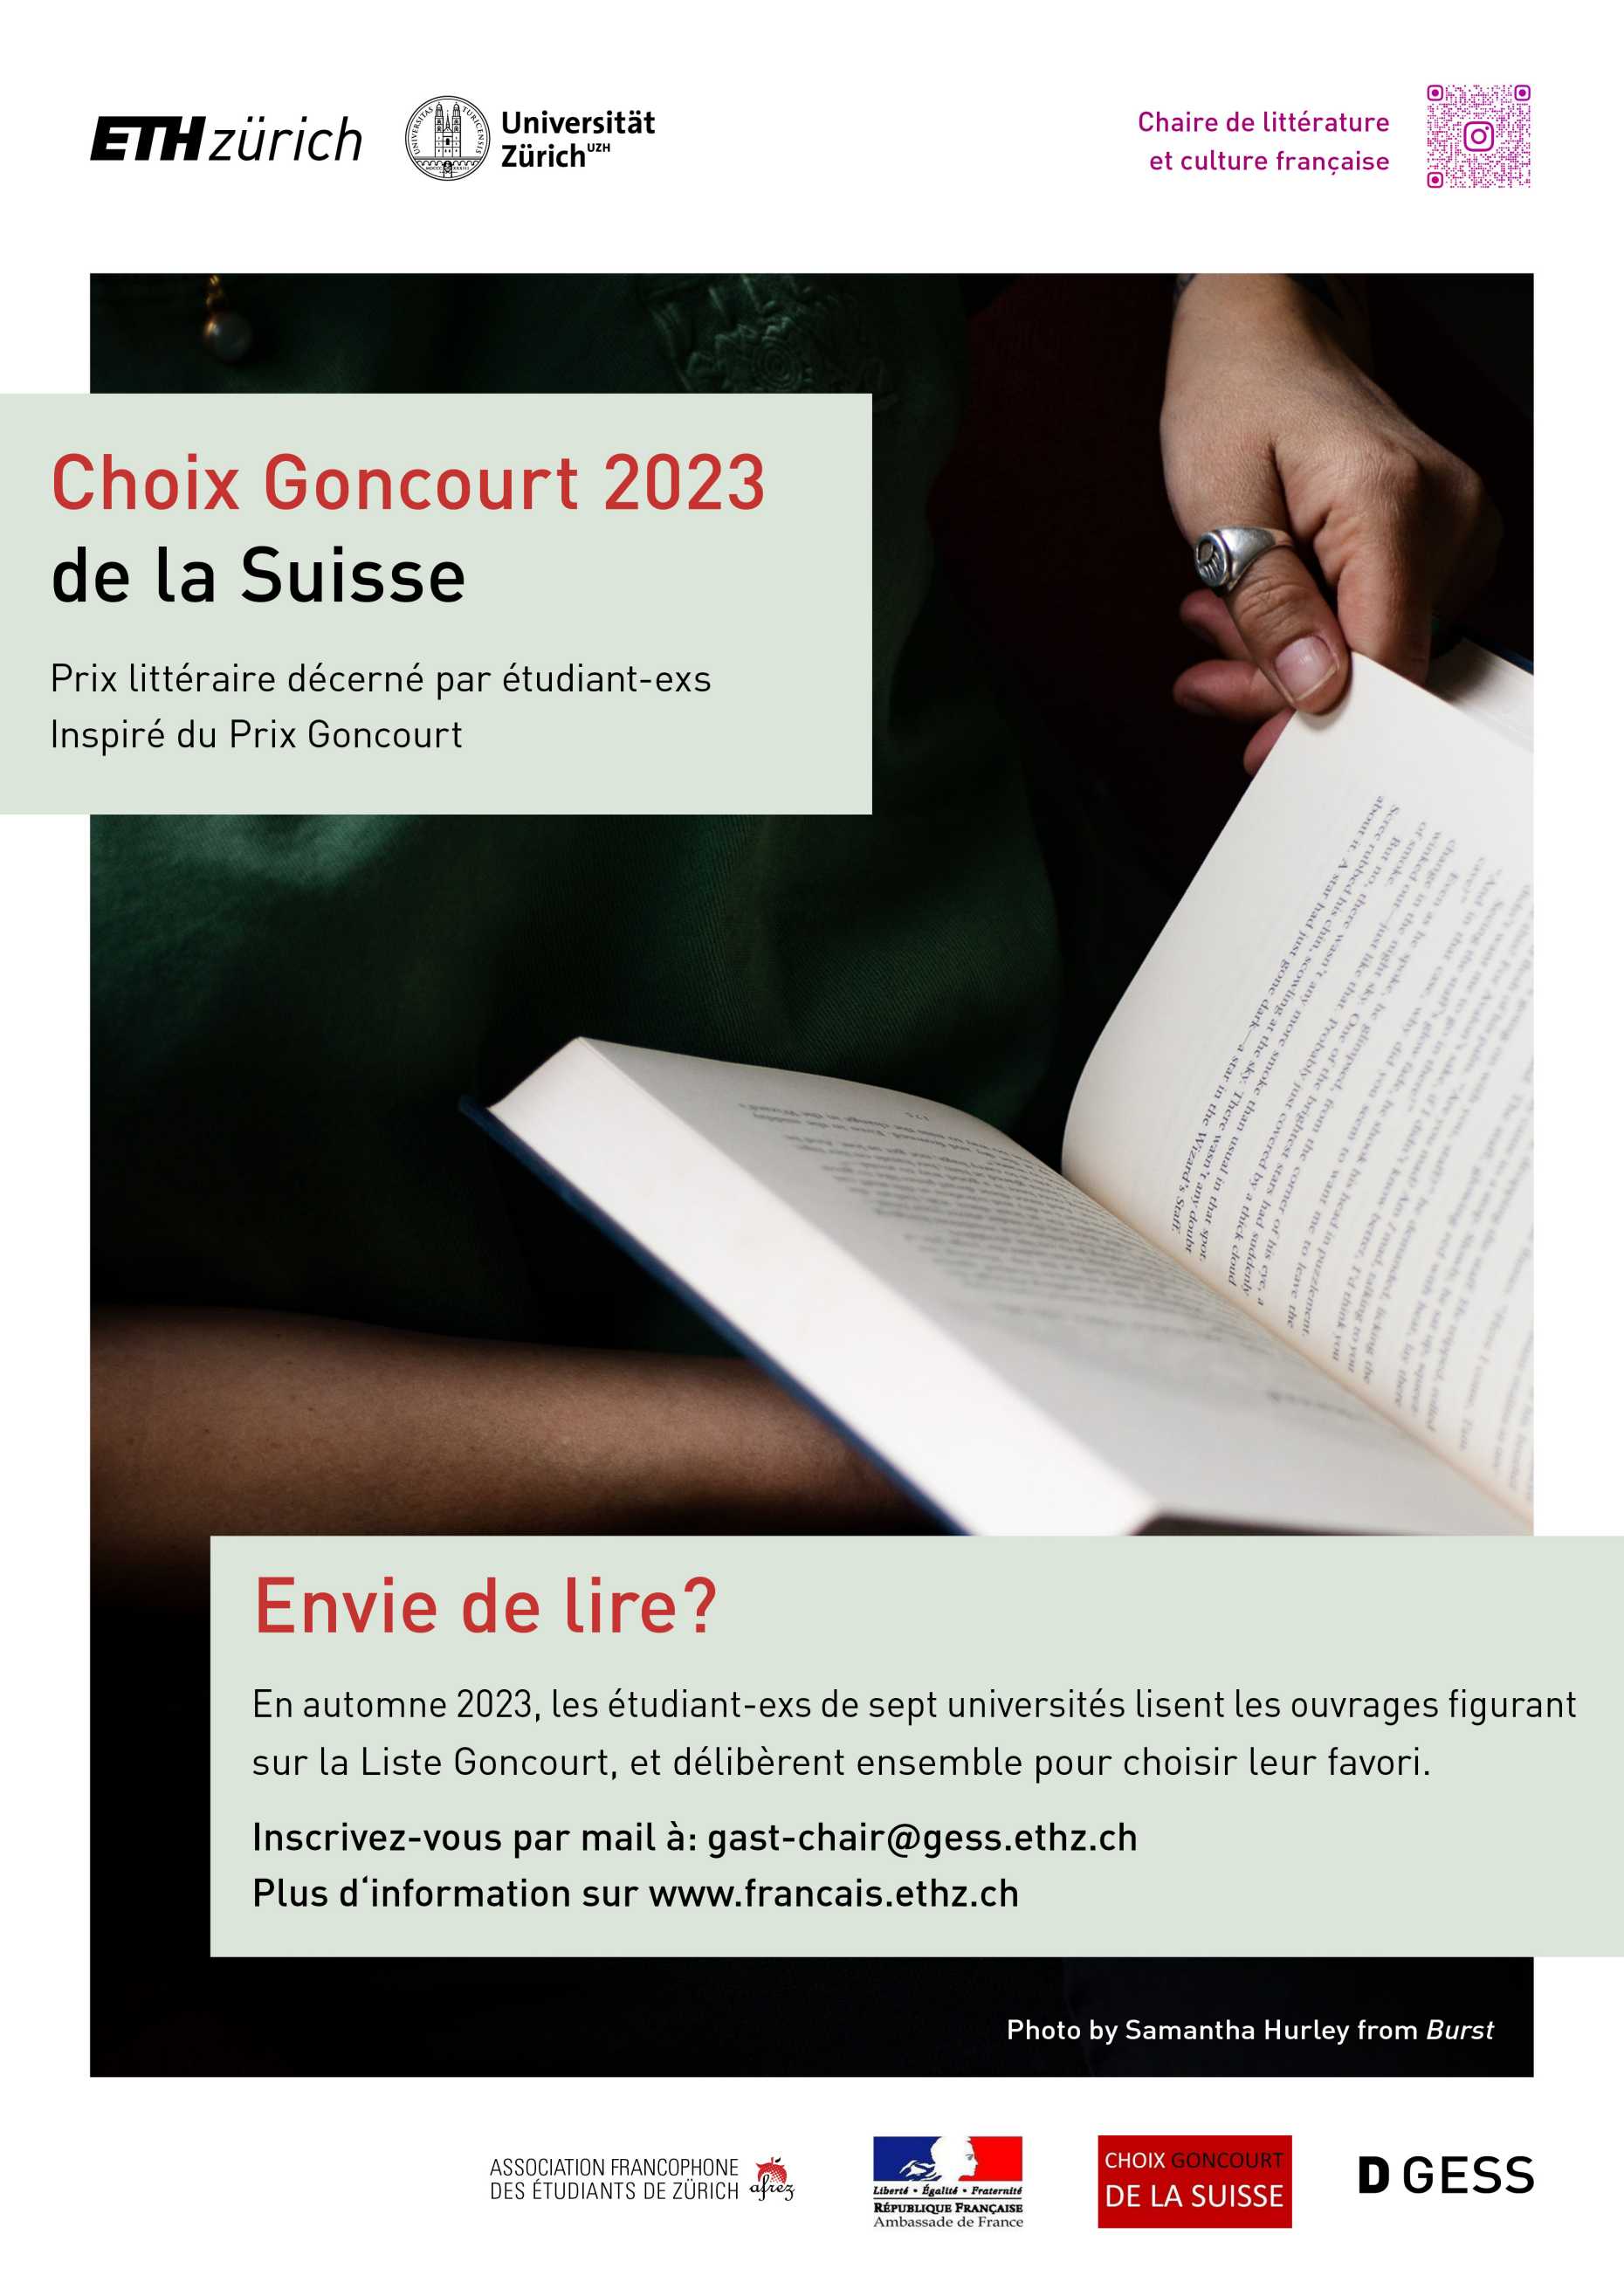 Choix Goncourt de la Suisse 2023